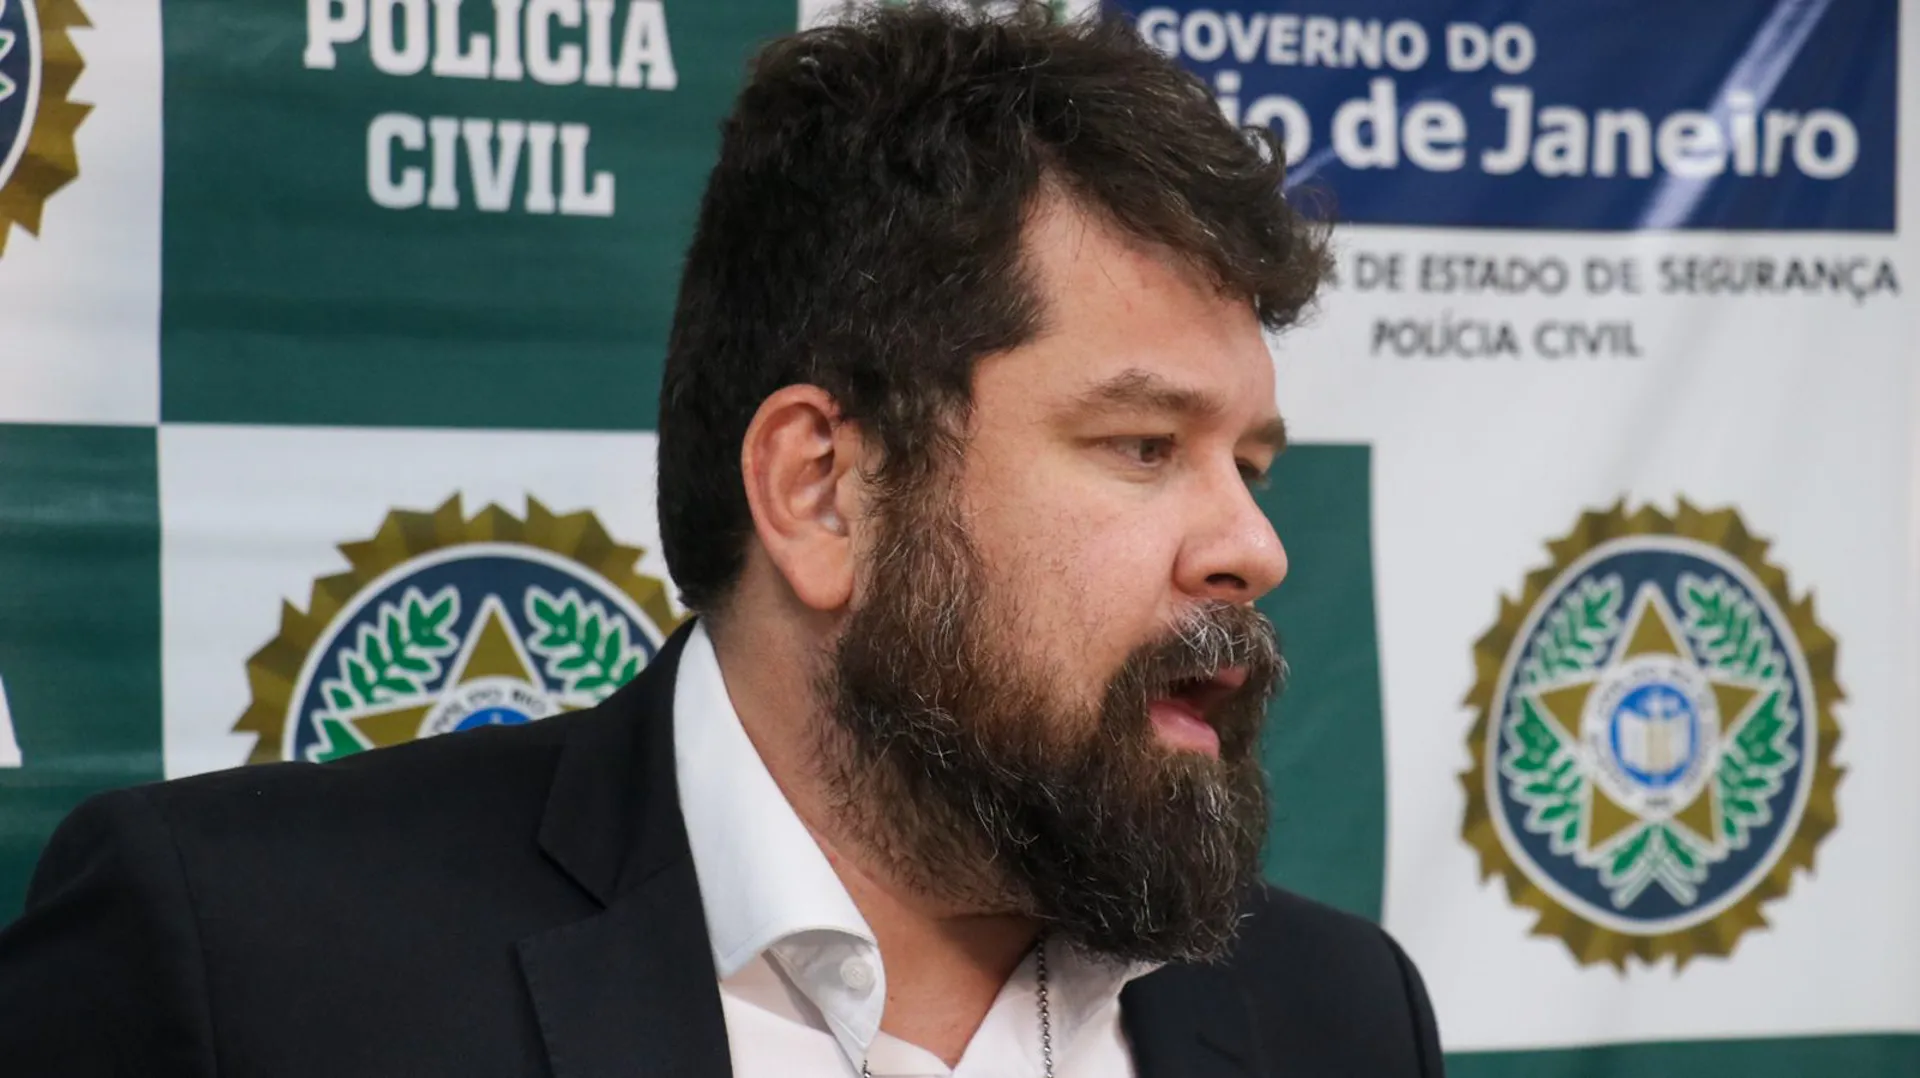 O Delegado André Neves falou sobre a ação da quadrilha